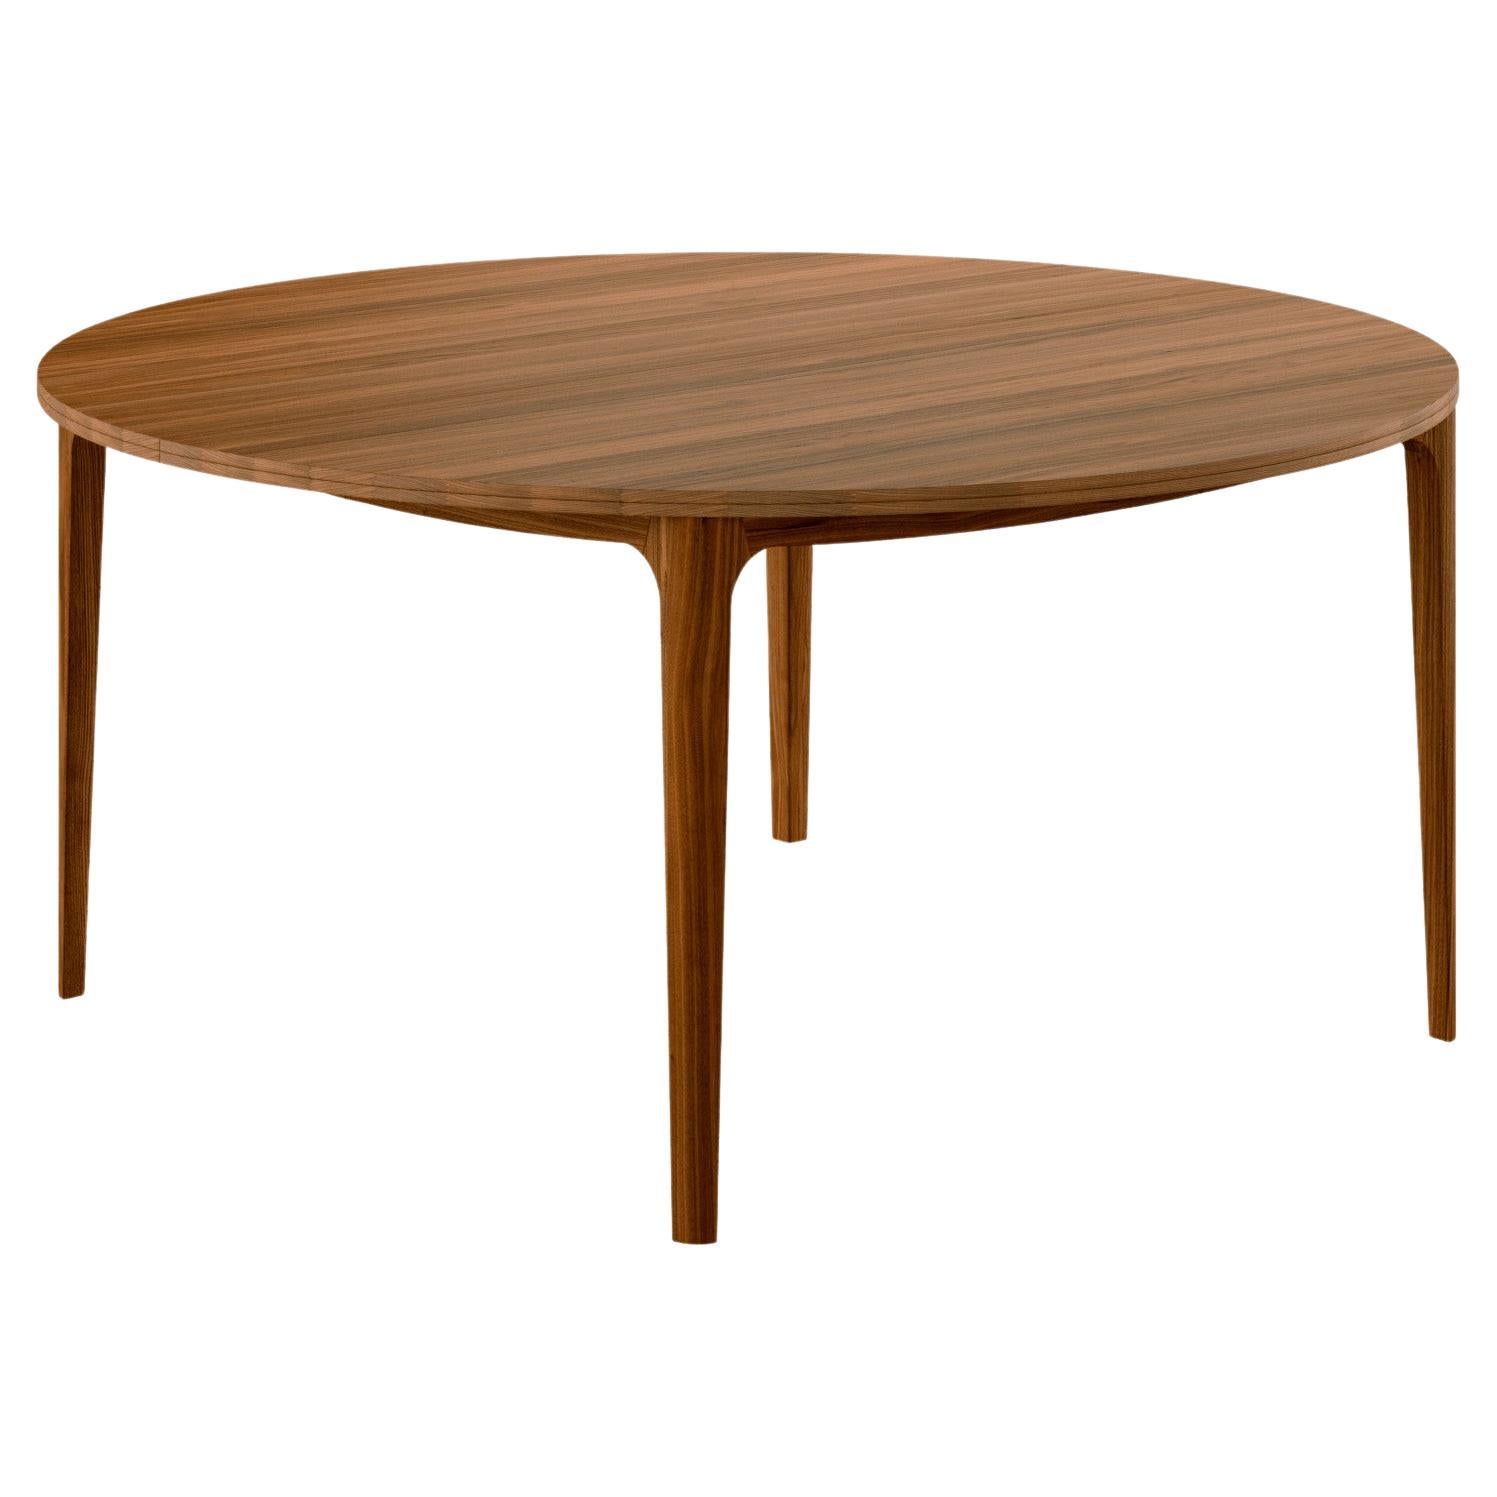 GM3700 RO Round table, Walnut - design by Hans Sandgren Jakobsen